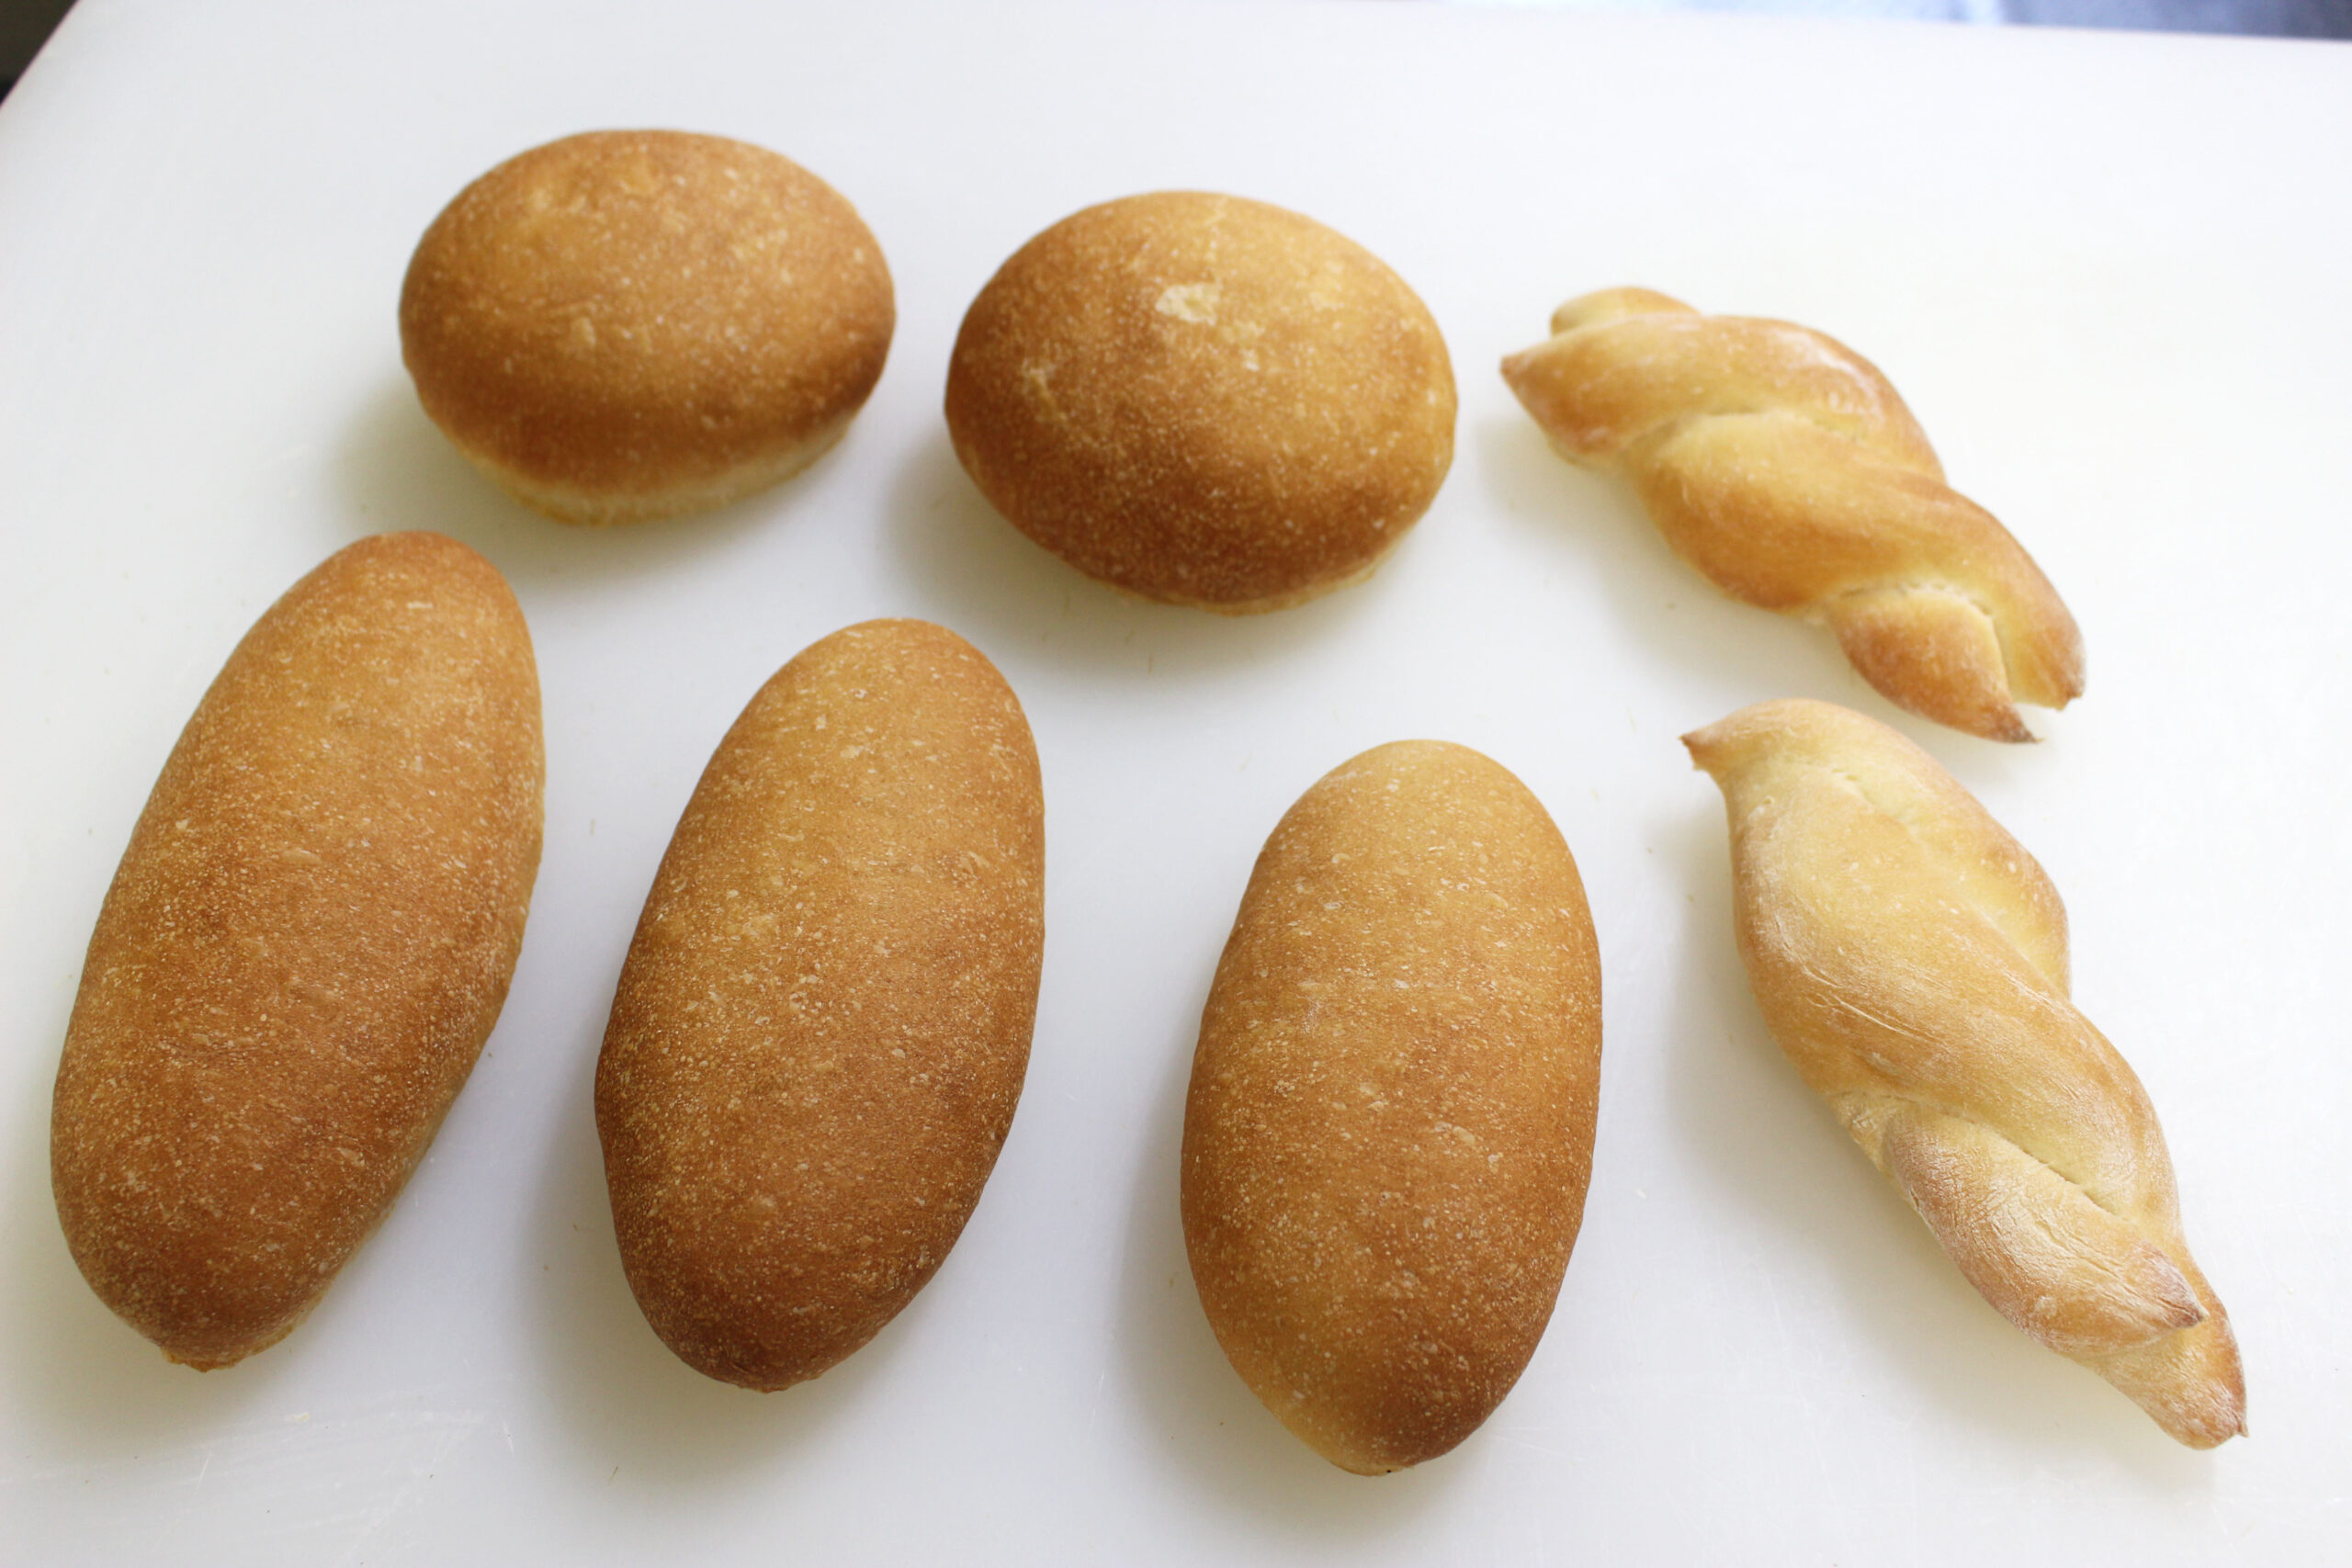 福岡・糸島の自然の恵みを詰め込んだ天然酵母パン。石原貴さんがパンを通して伝えたいこと